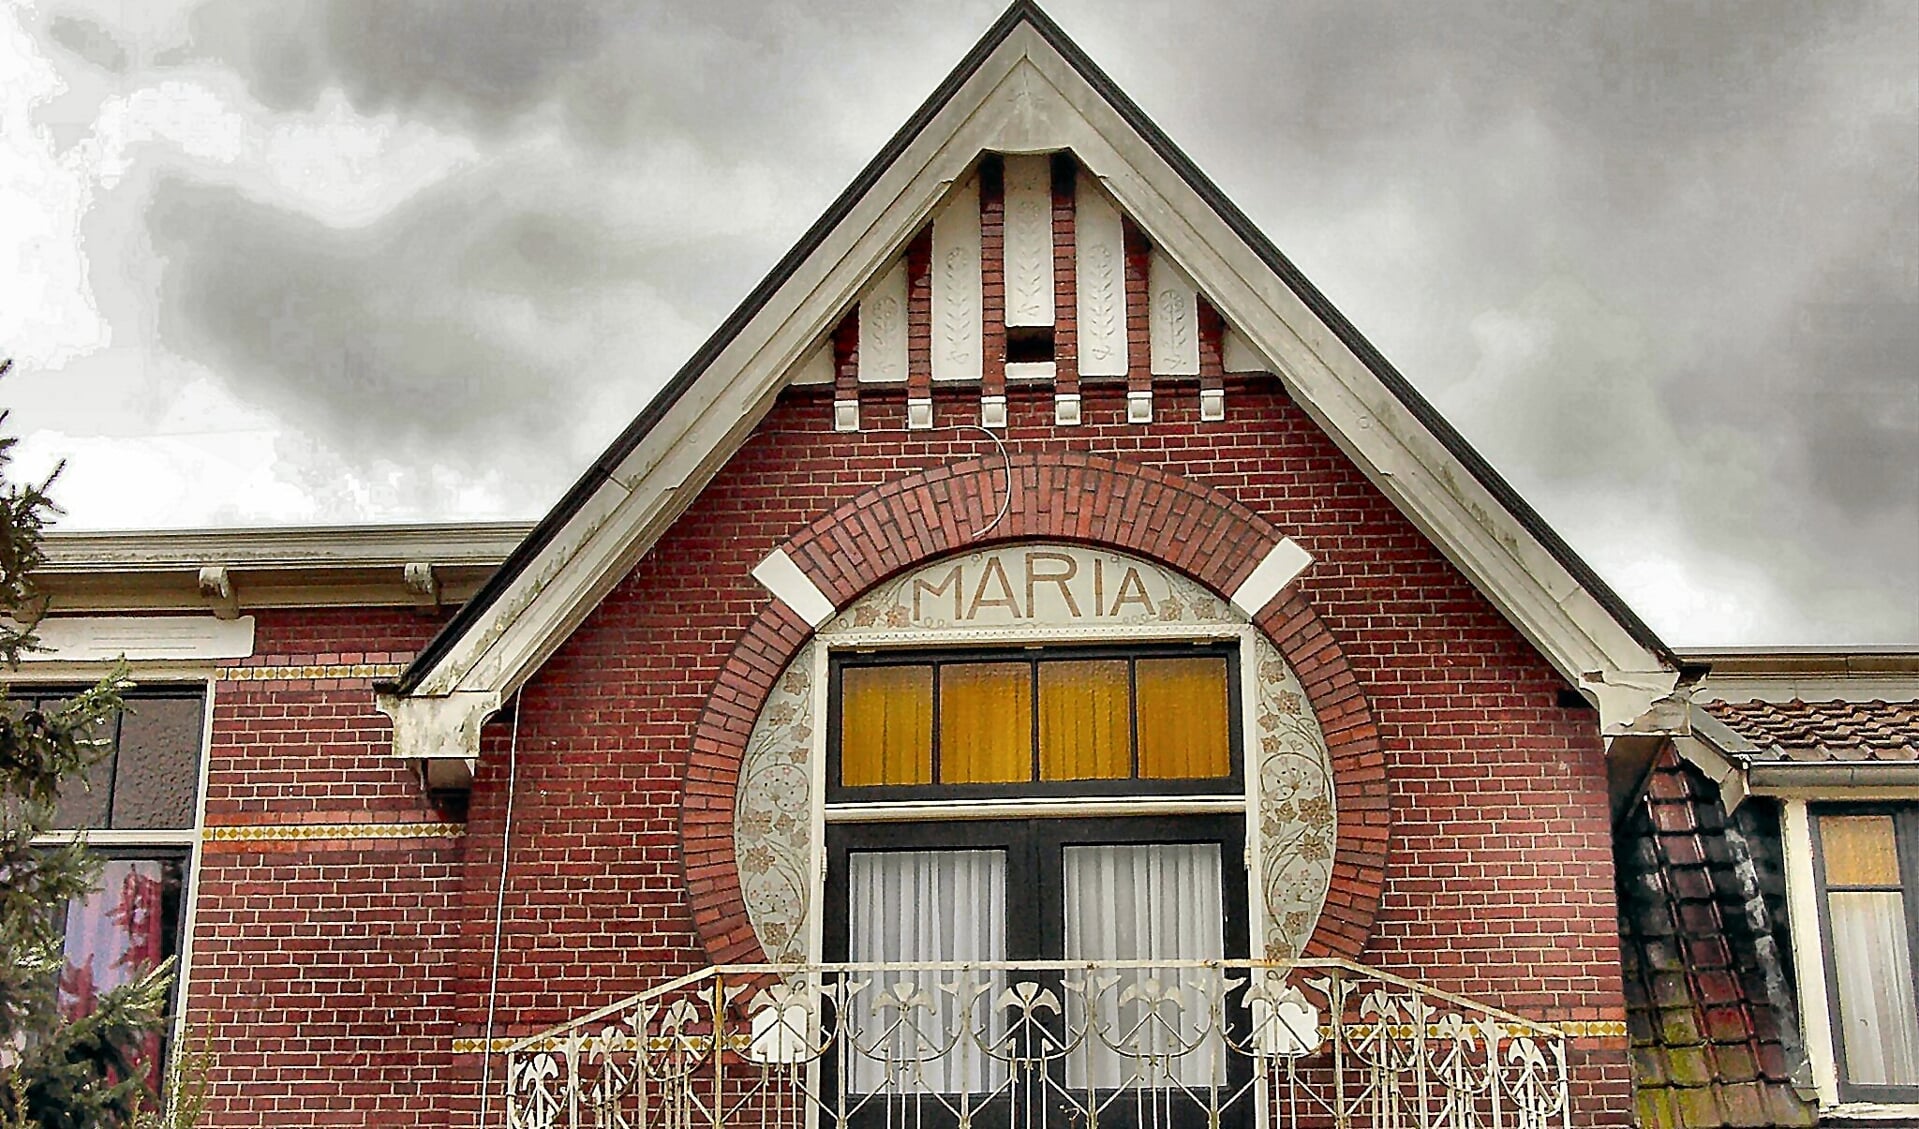 Art Nouveau stijl goed te herkennen bij villa Maria in Bredevoort. Foto: Leo van der Linde